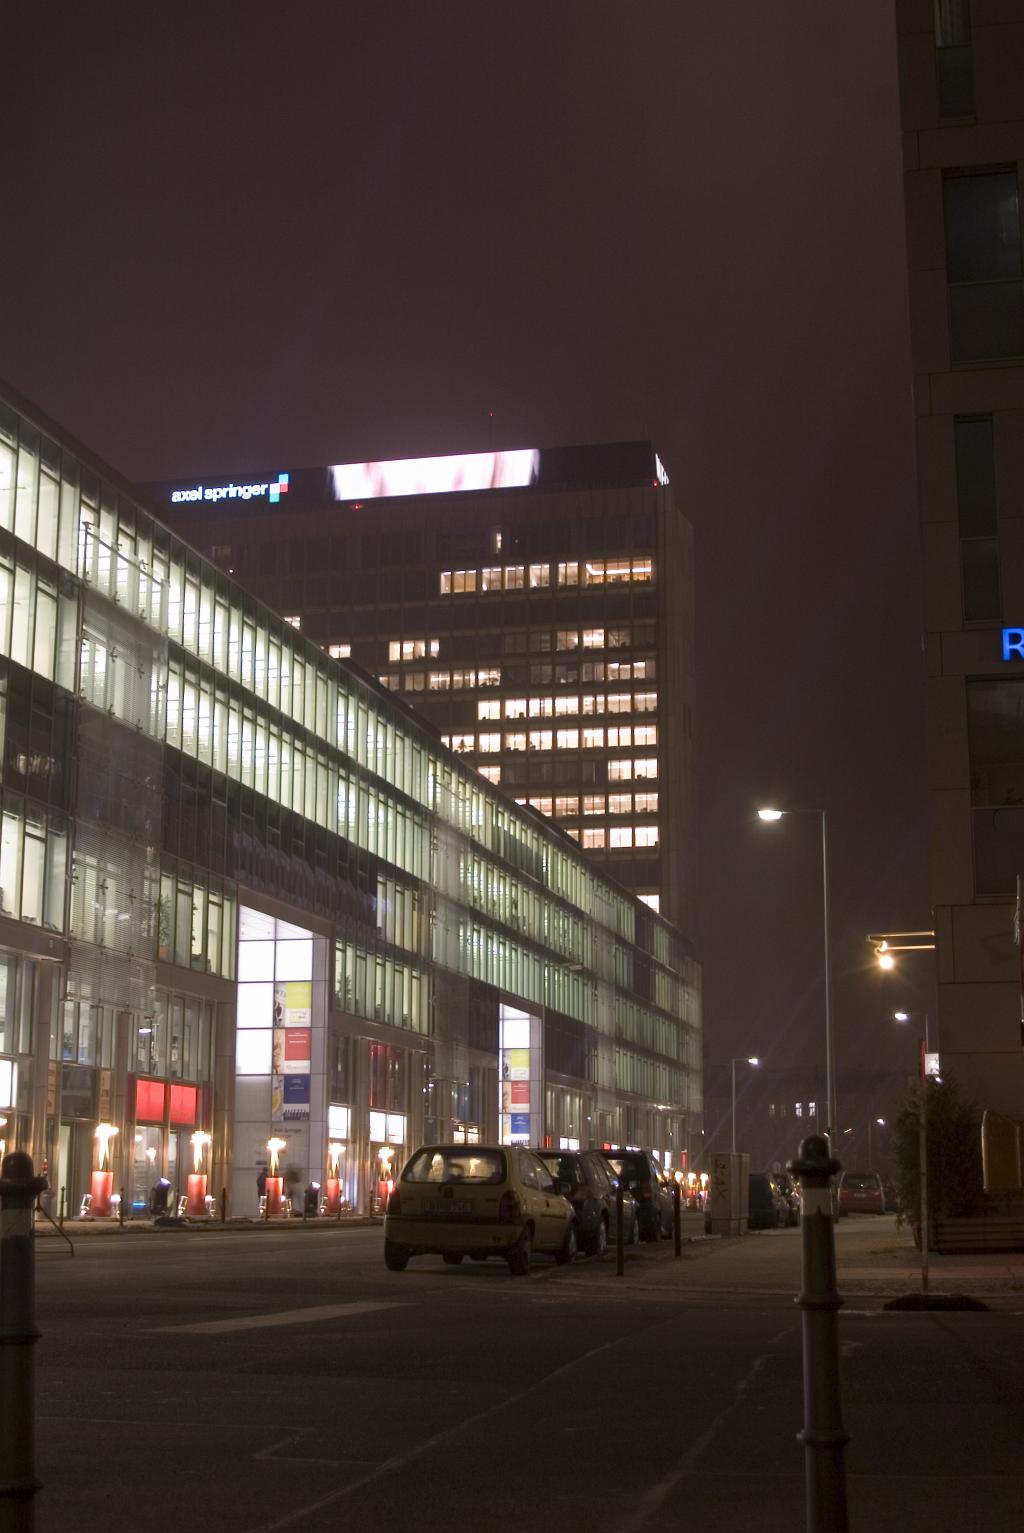 50 Meter: LED-Display auf dem Axel-Springer-Haus in Berlin